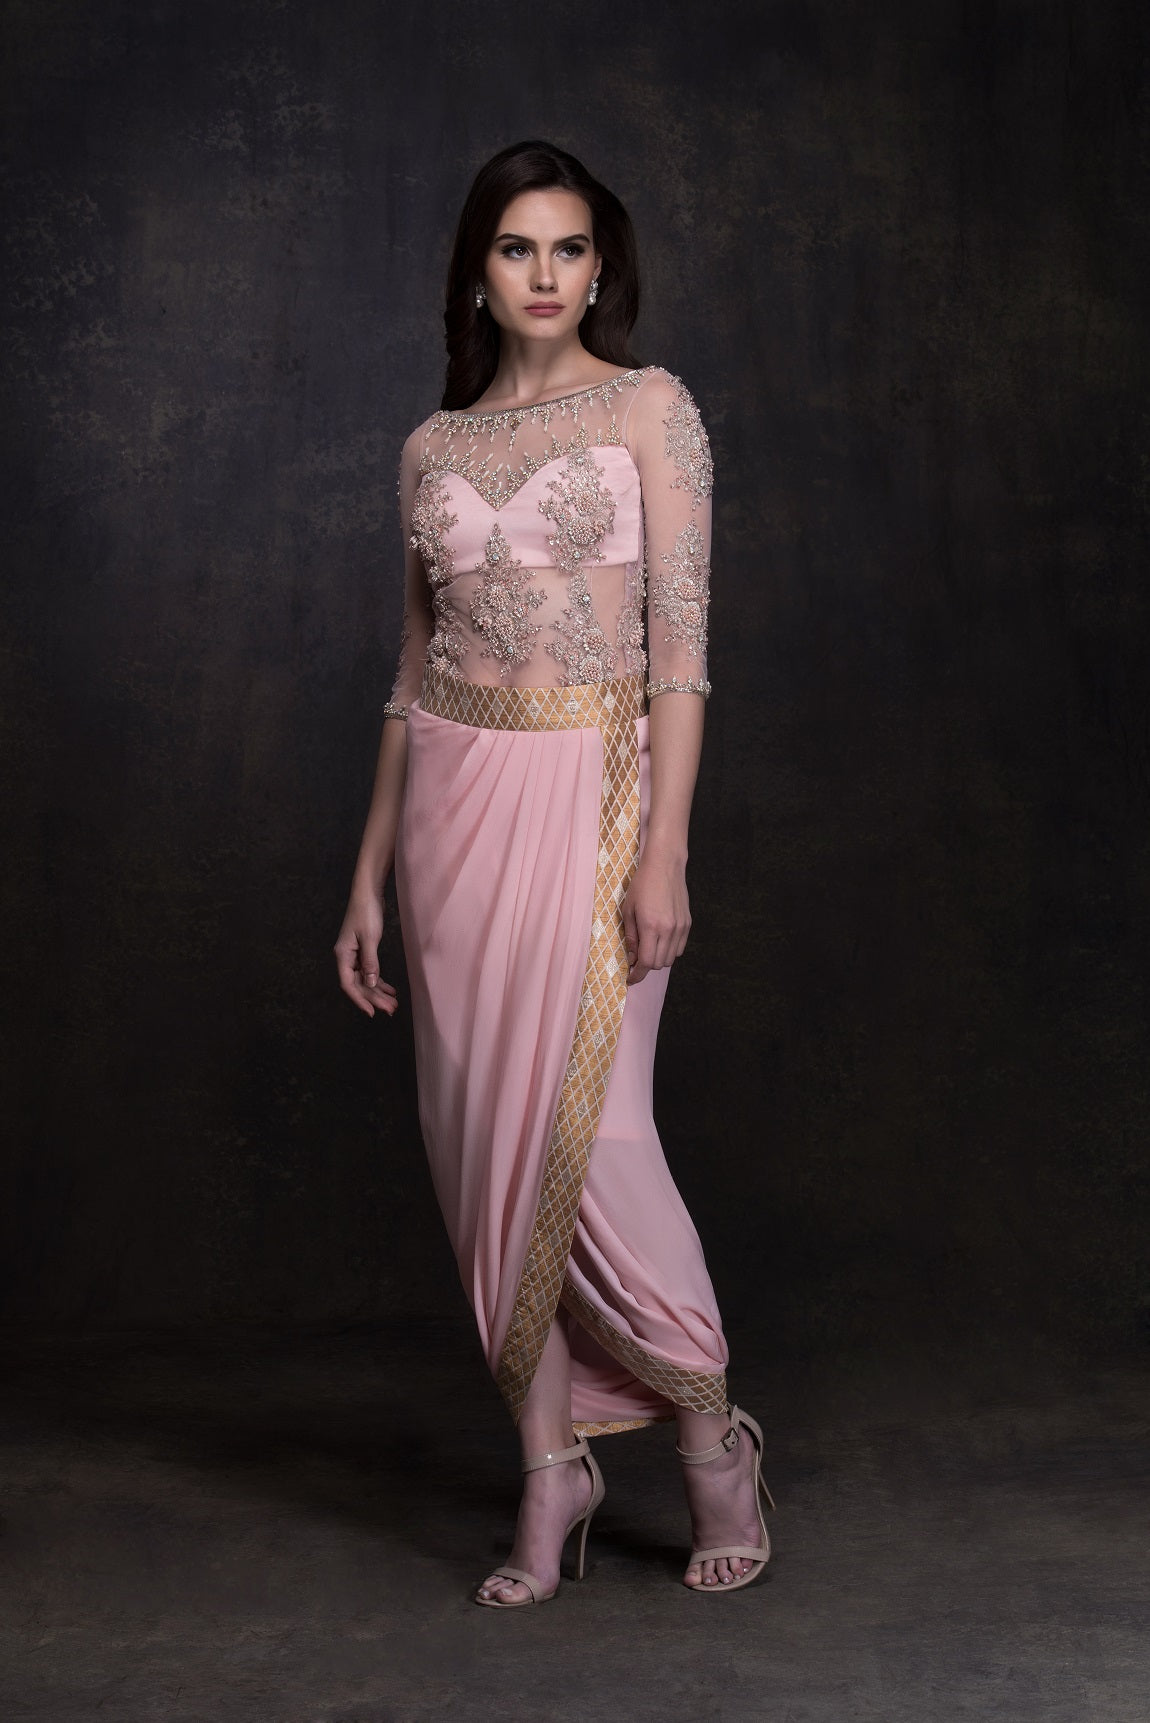 Chandni - The Pinwheel Flower Skirt